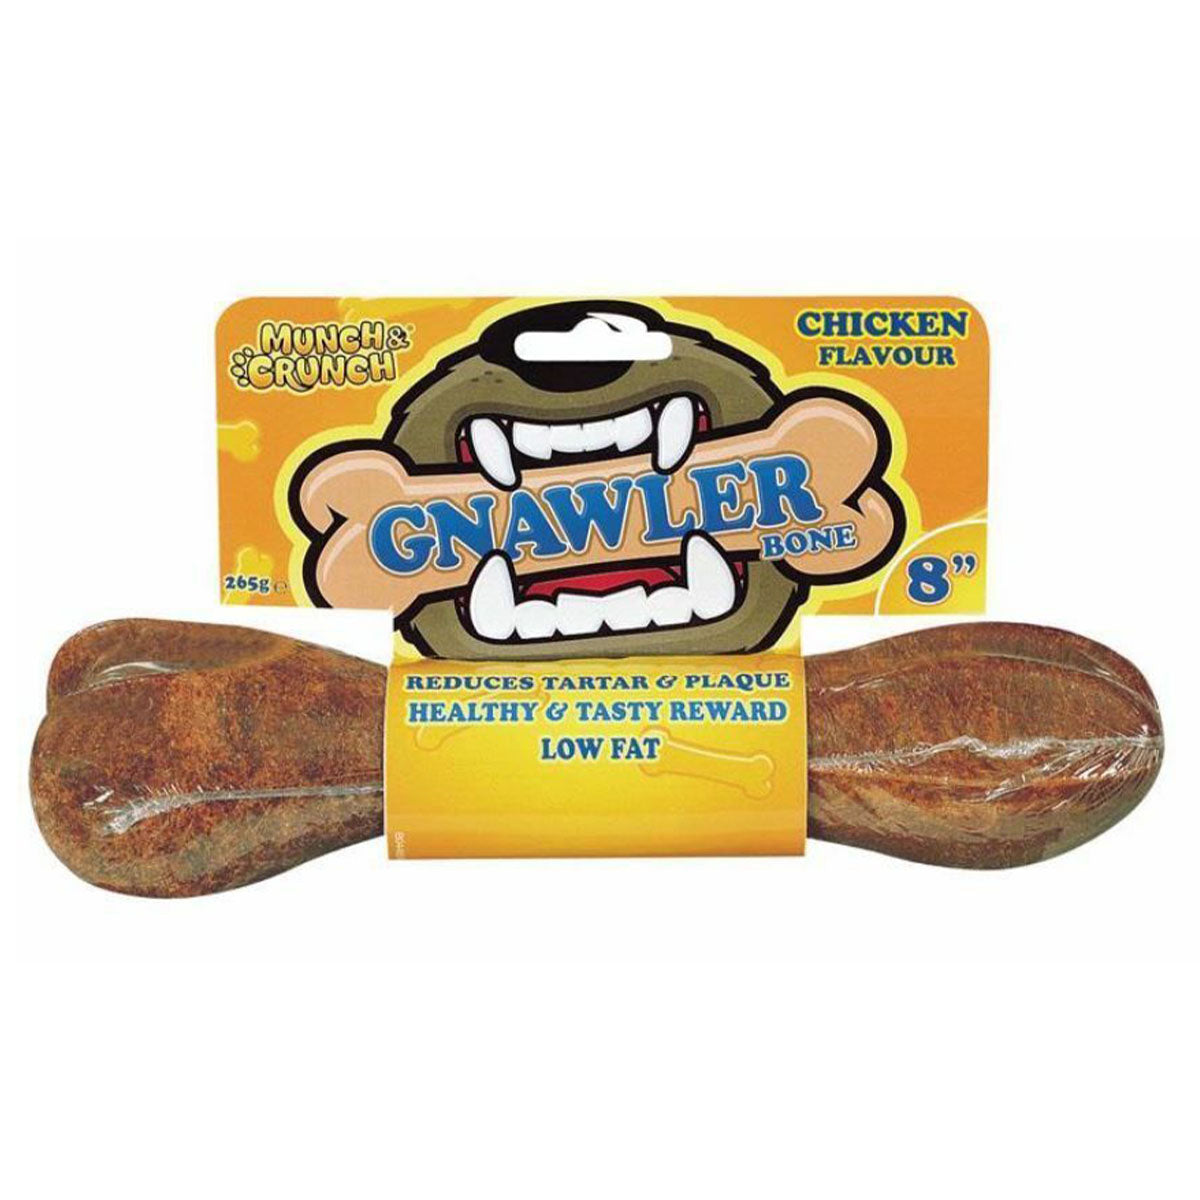 Munch & Crunch - 8" Gnawler Bone Chicken Flavour - 265g - Continental Food Store